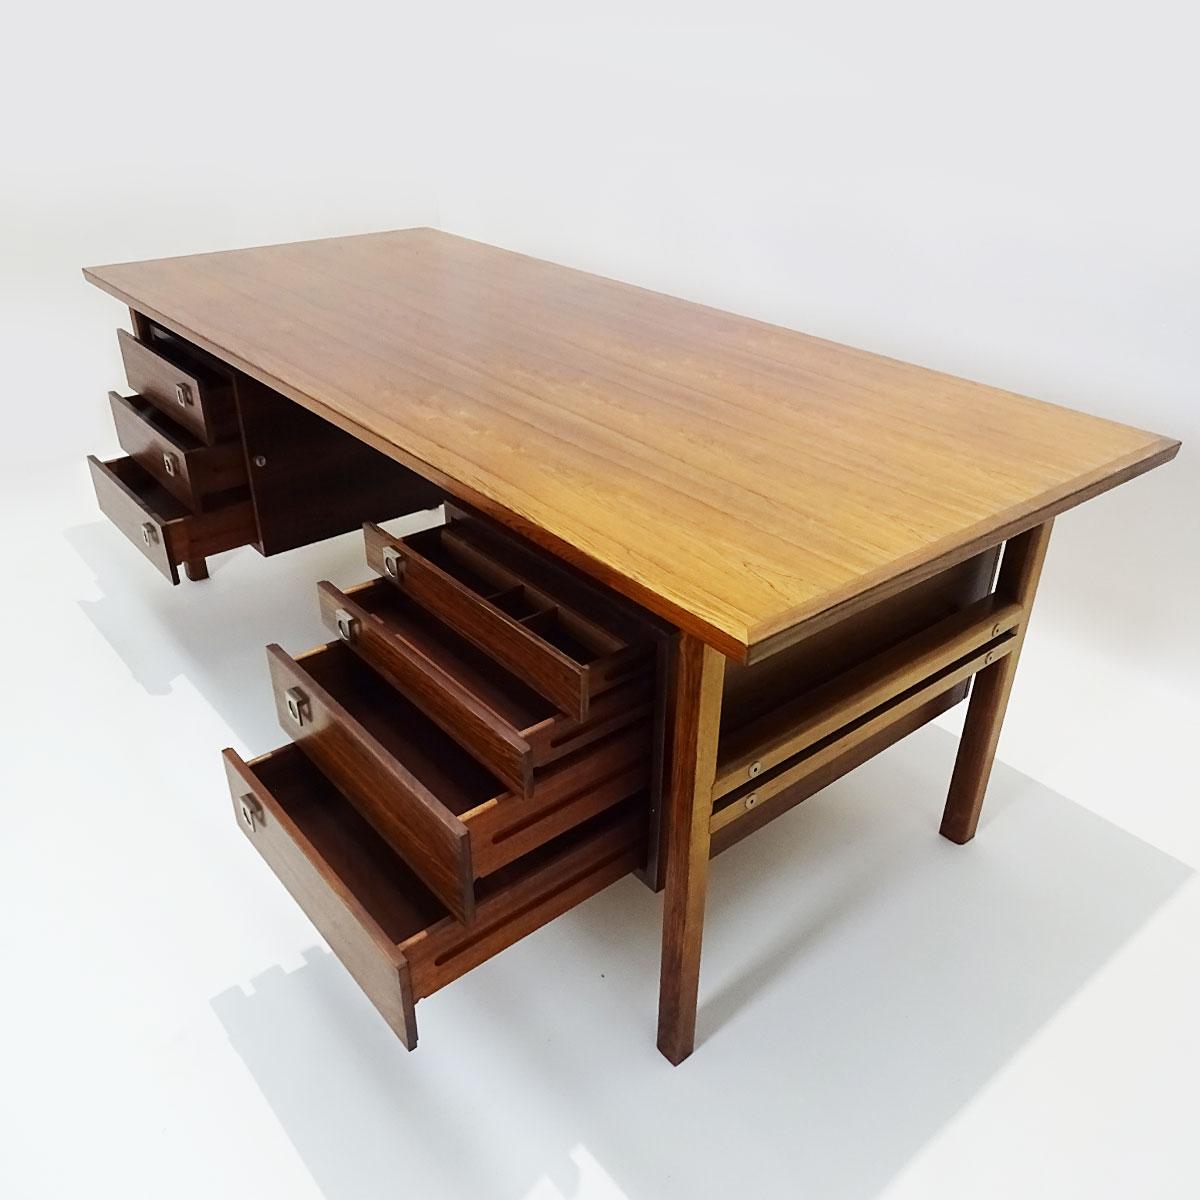 20th Century Large Vintage Danish Midcentury Rosewood Desk by Arne Vodder for Sibast